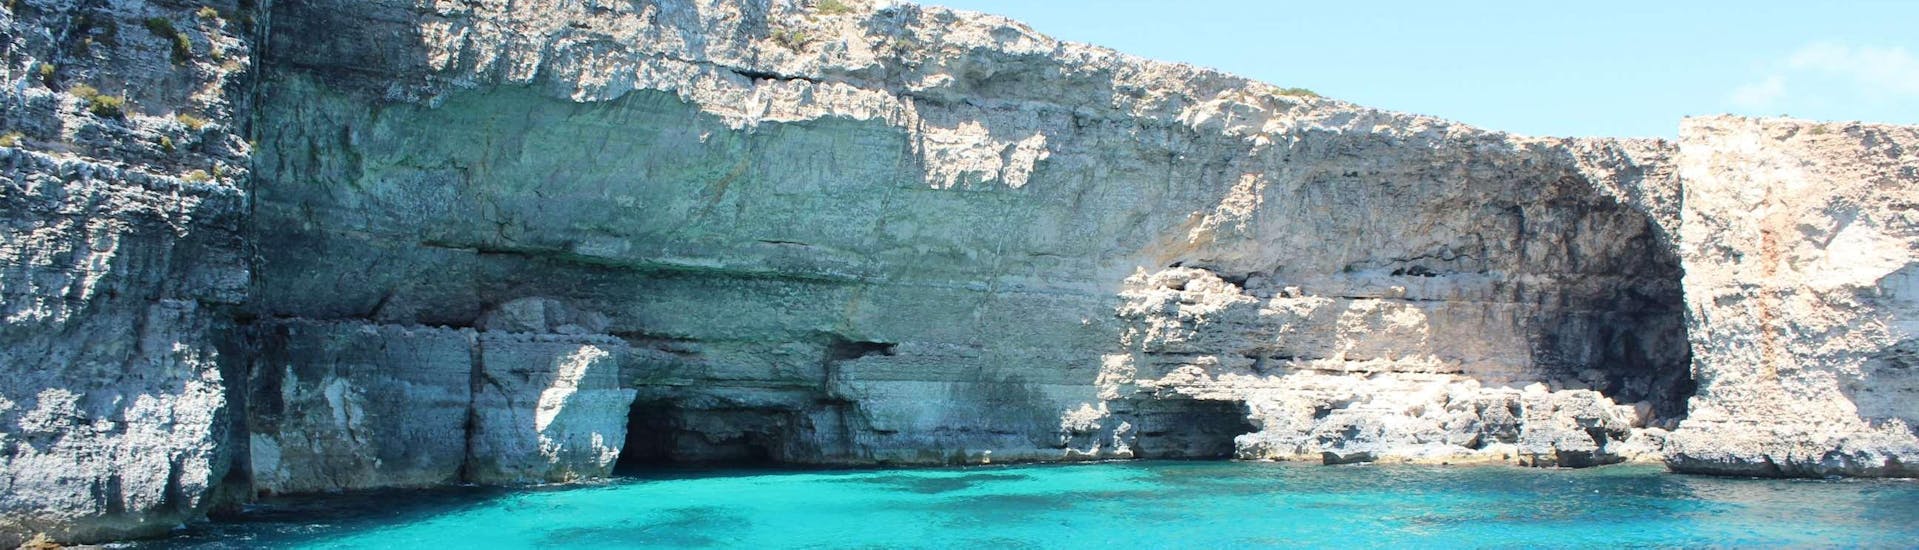 Le fantastiche scogliere di Comino viste durante la nostra gita in barca a Gozo, Comino & Laguna Blu.